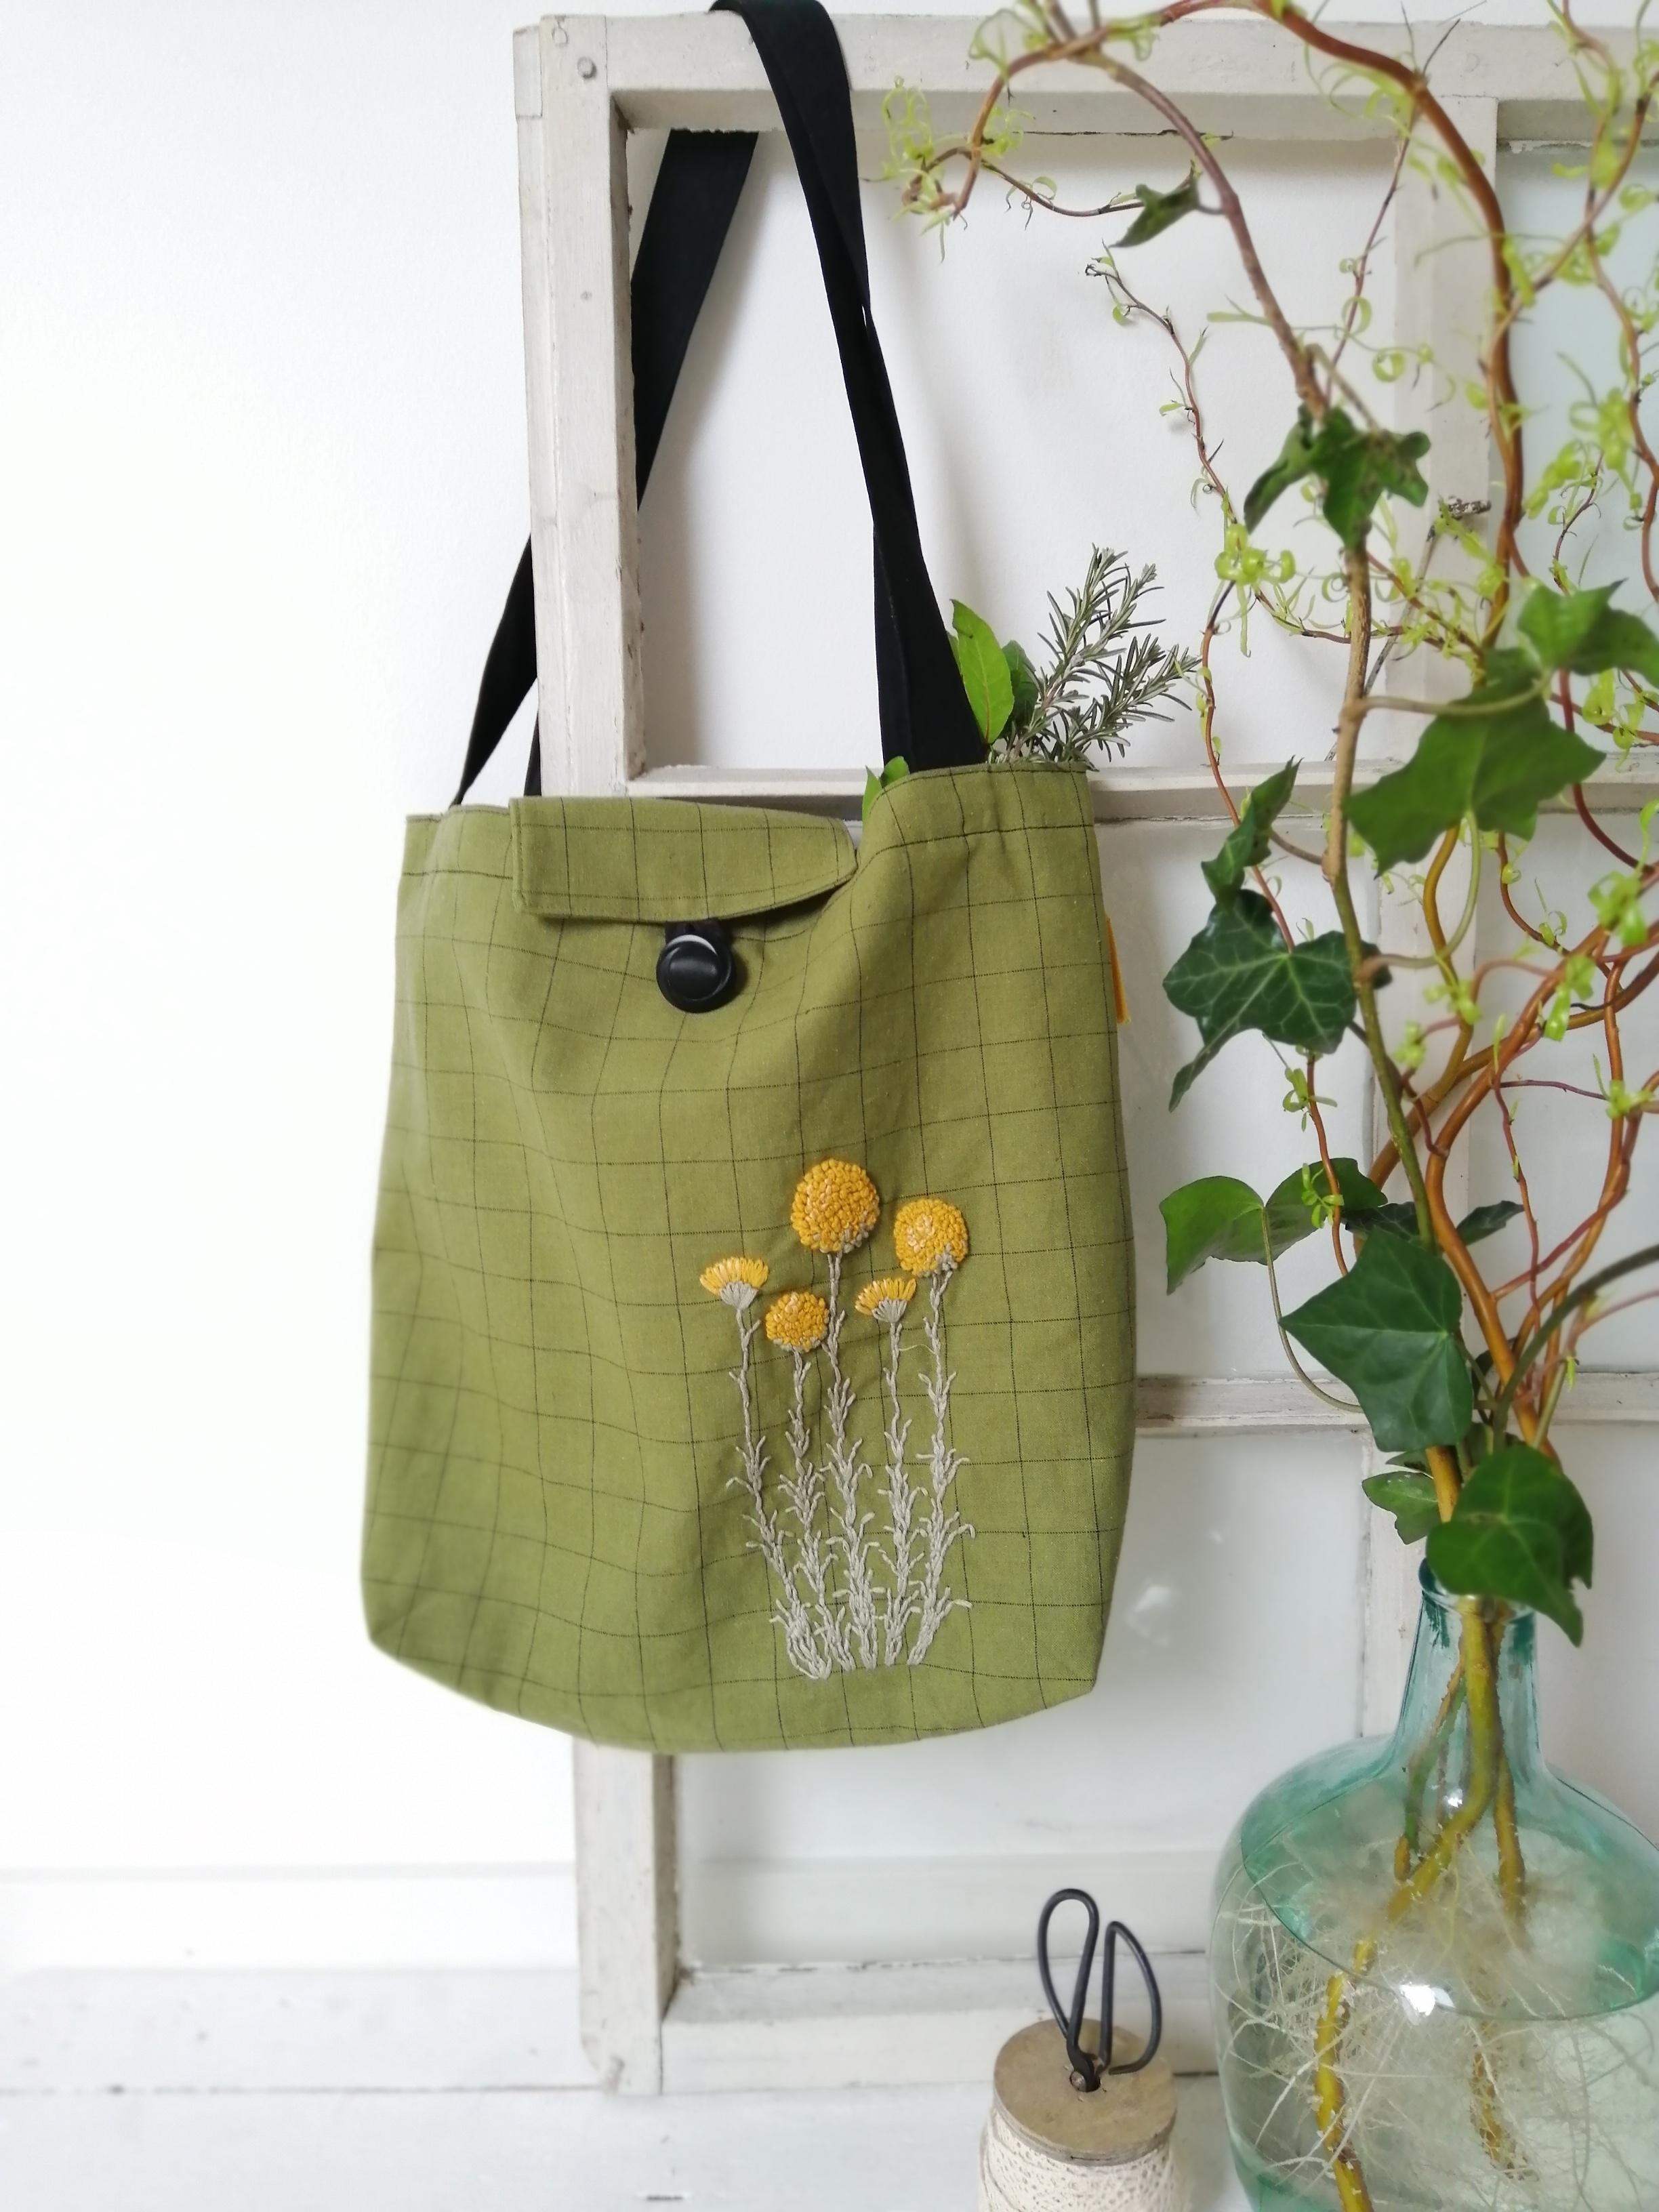 Handgemacht mit viel Natur🌿
#botanicalembroidery #sewtotbag #leineTasche ab zum Einkaufen... 